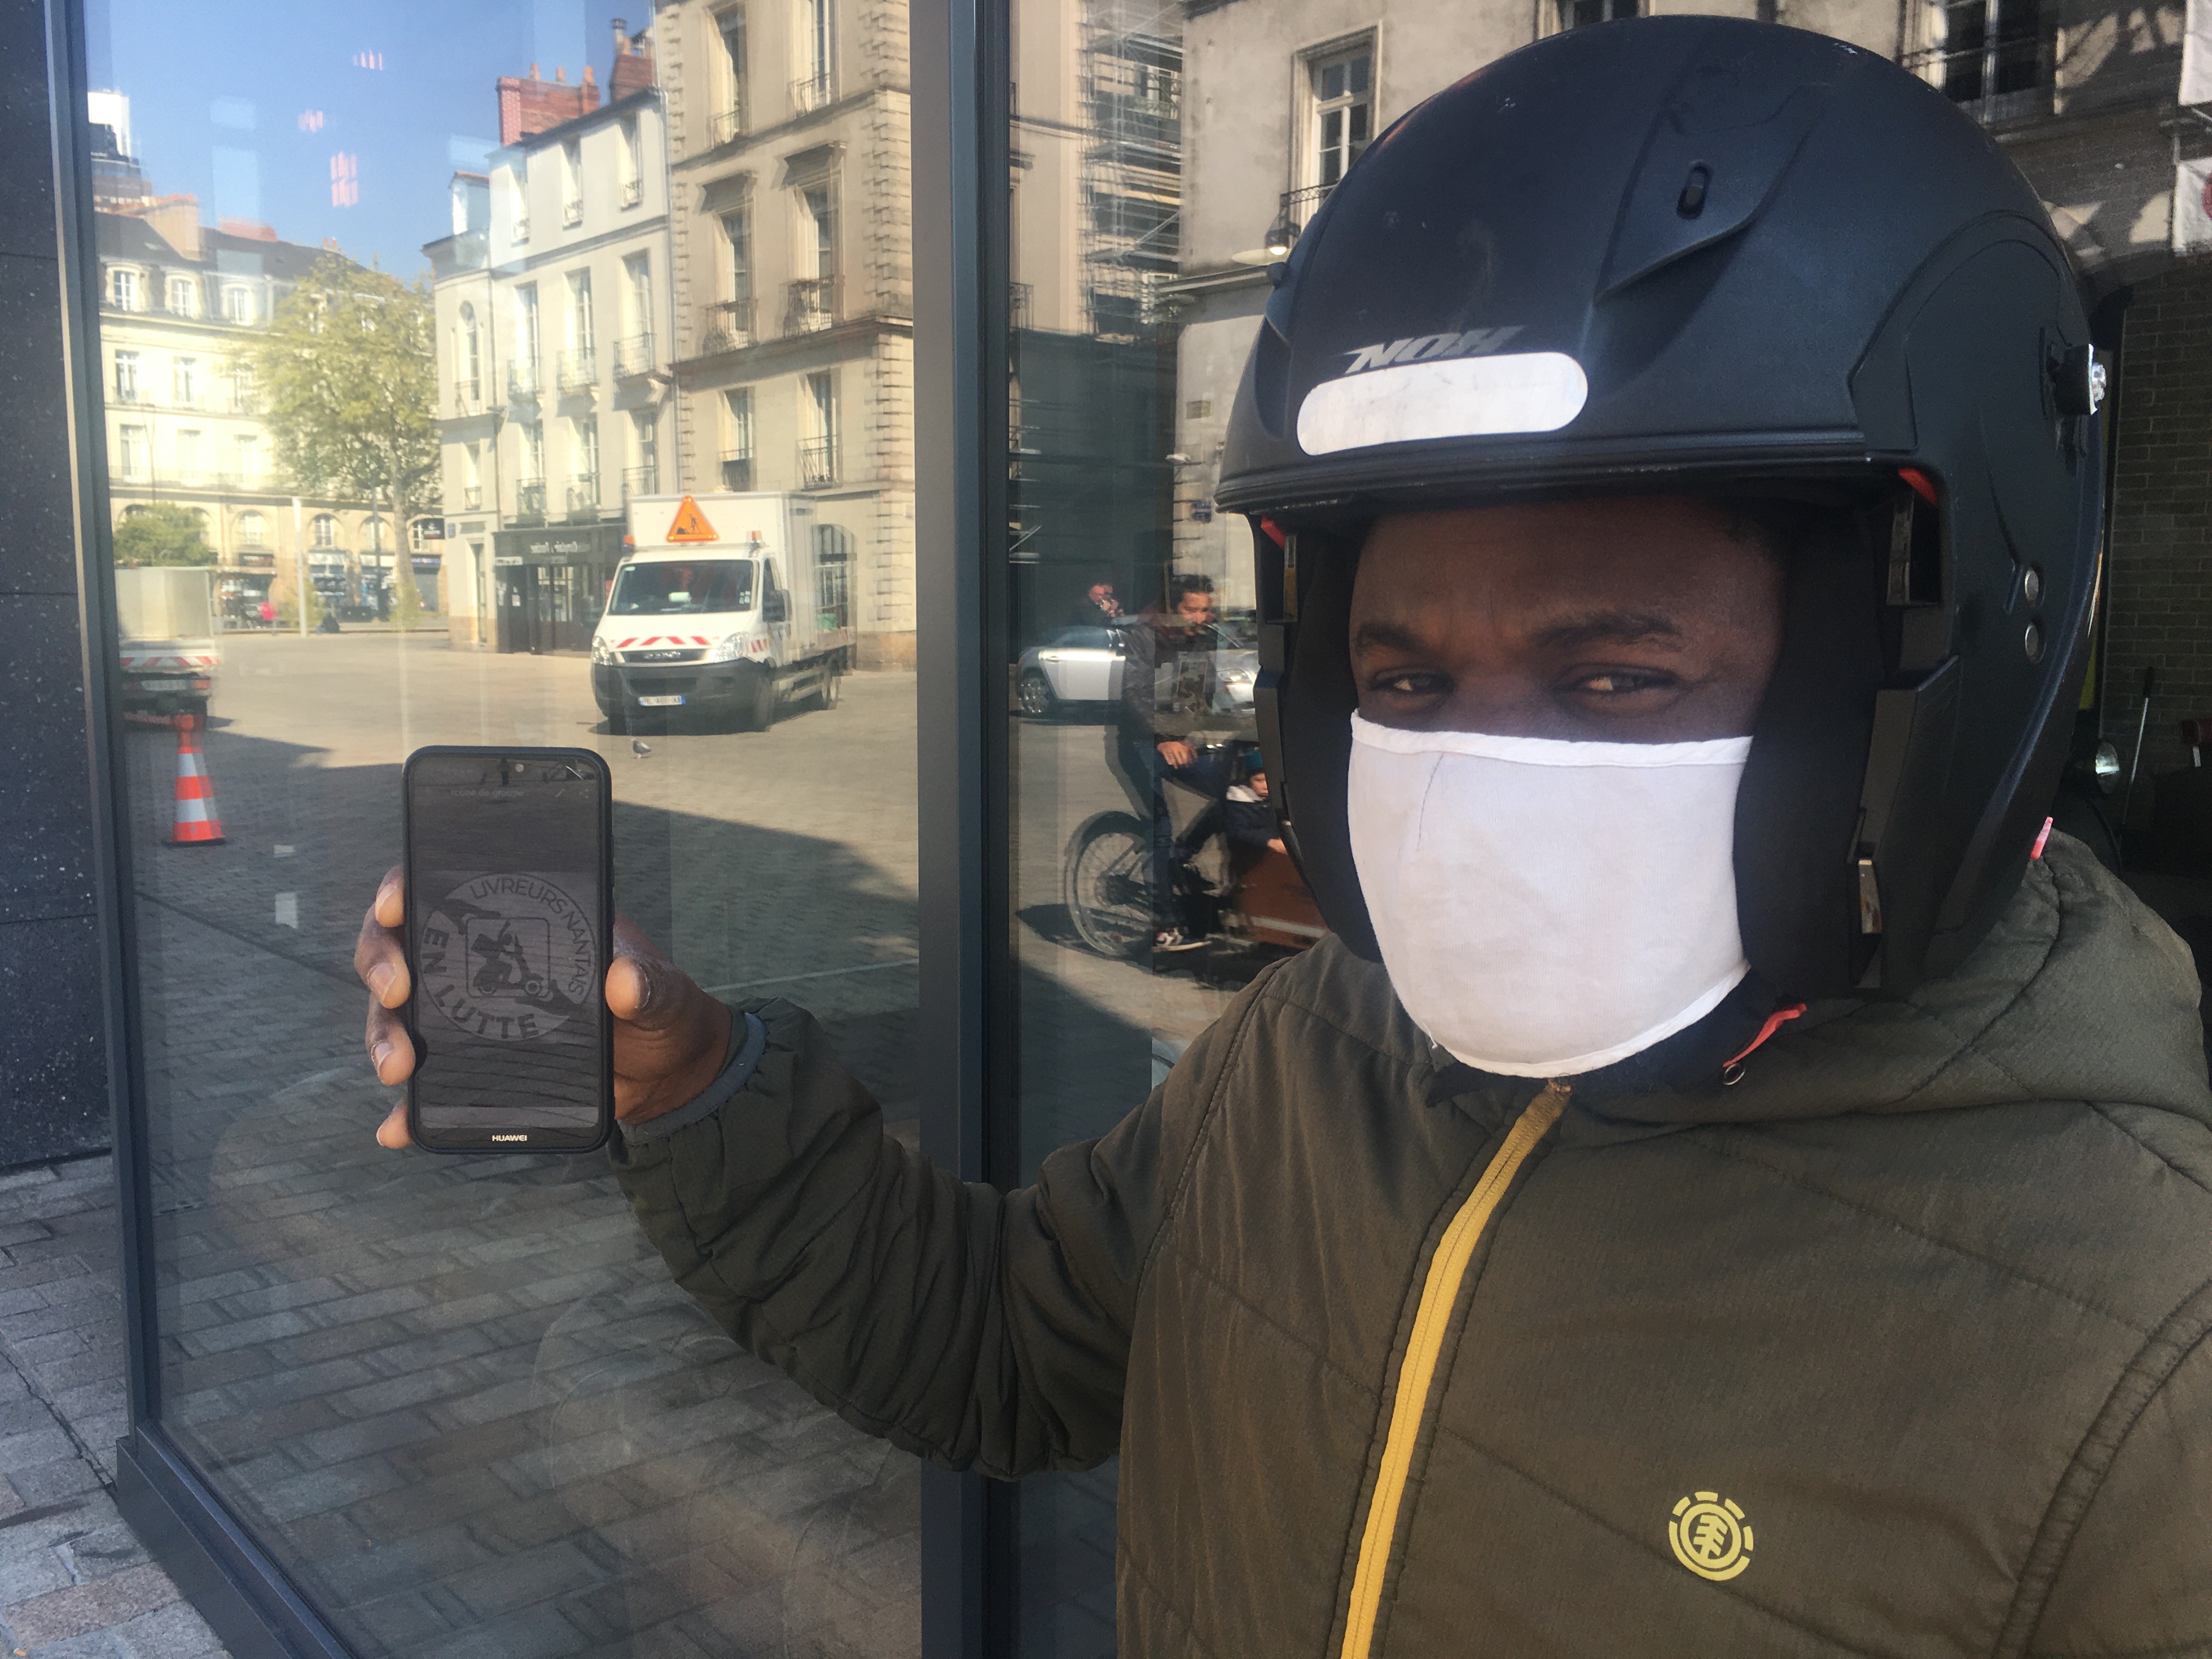 Livreurs à scooter en lutte Nantes.jpeg (2.18 MB)